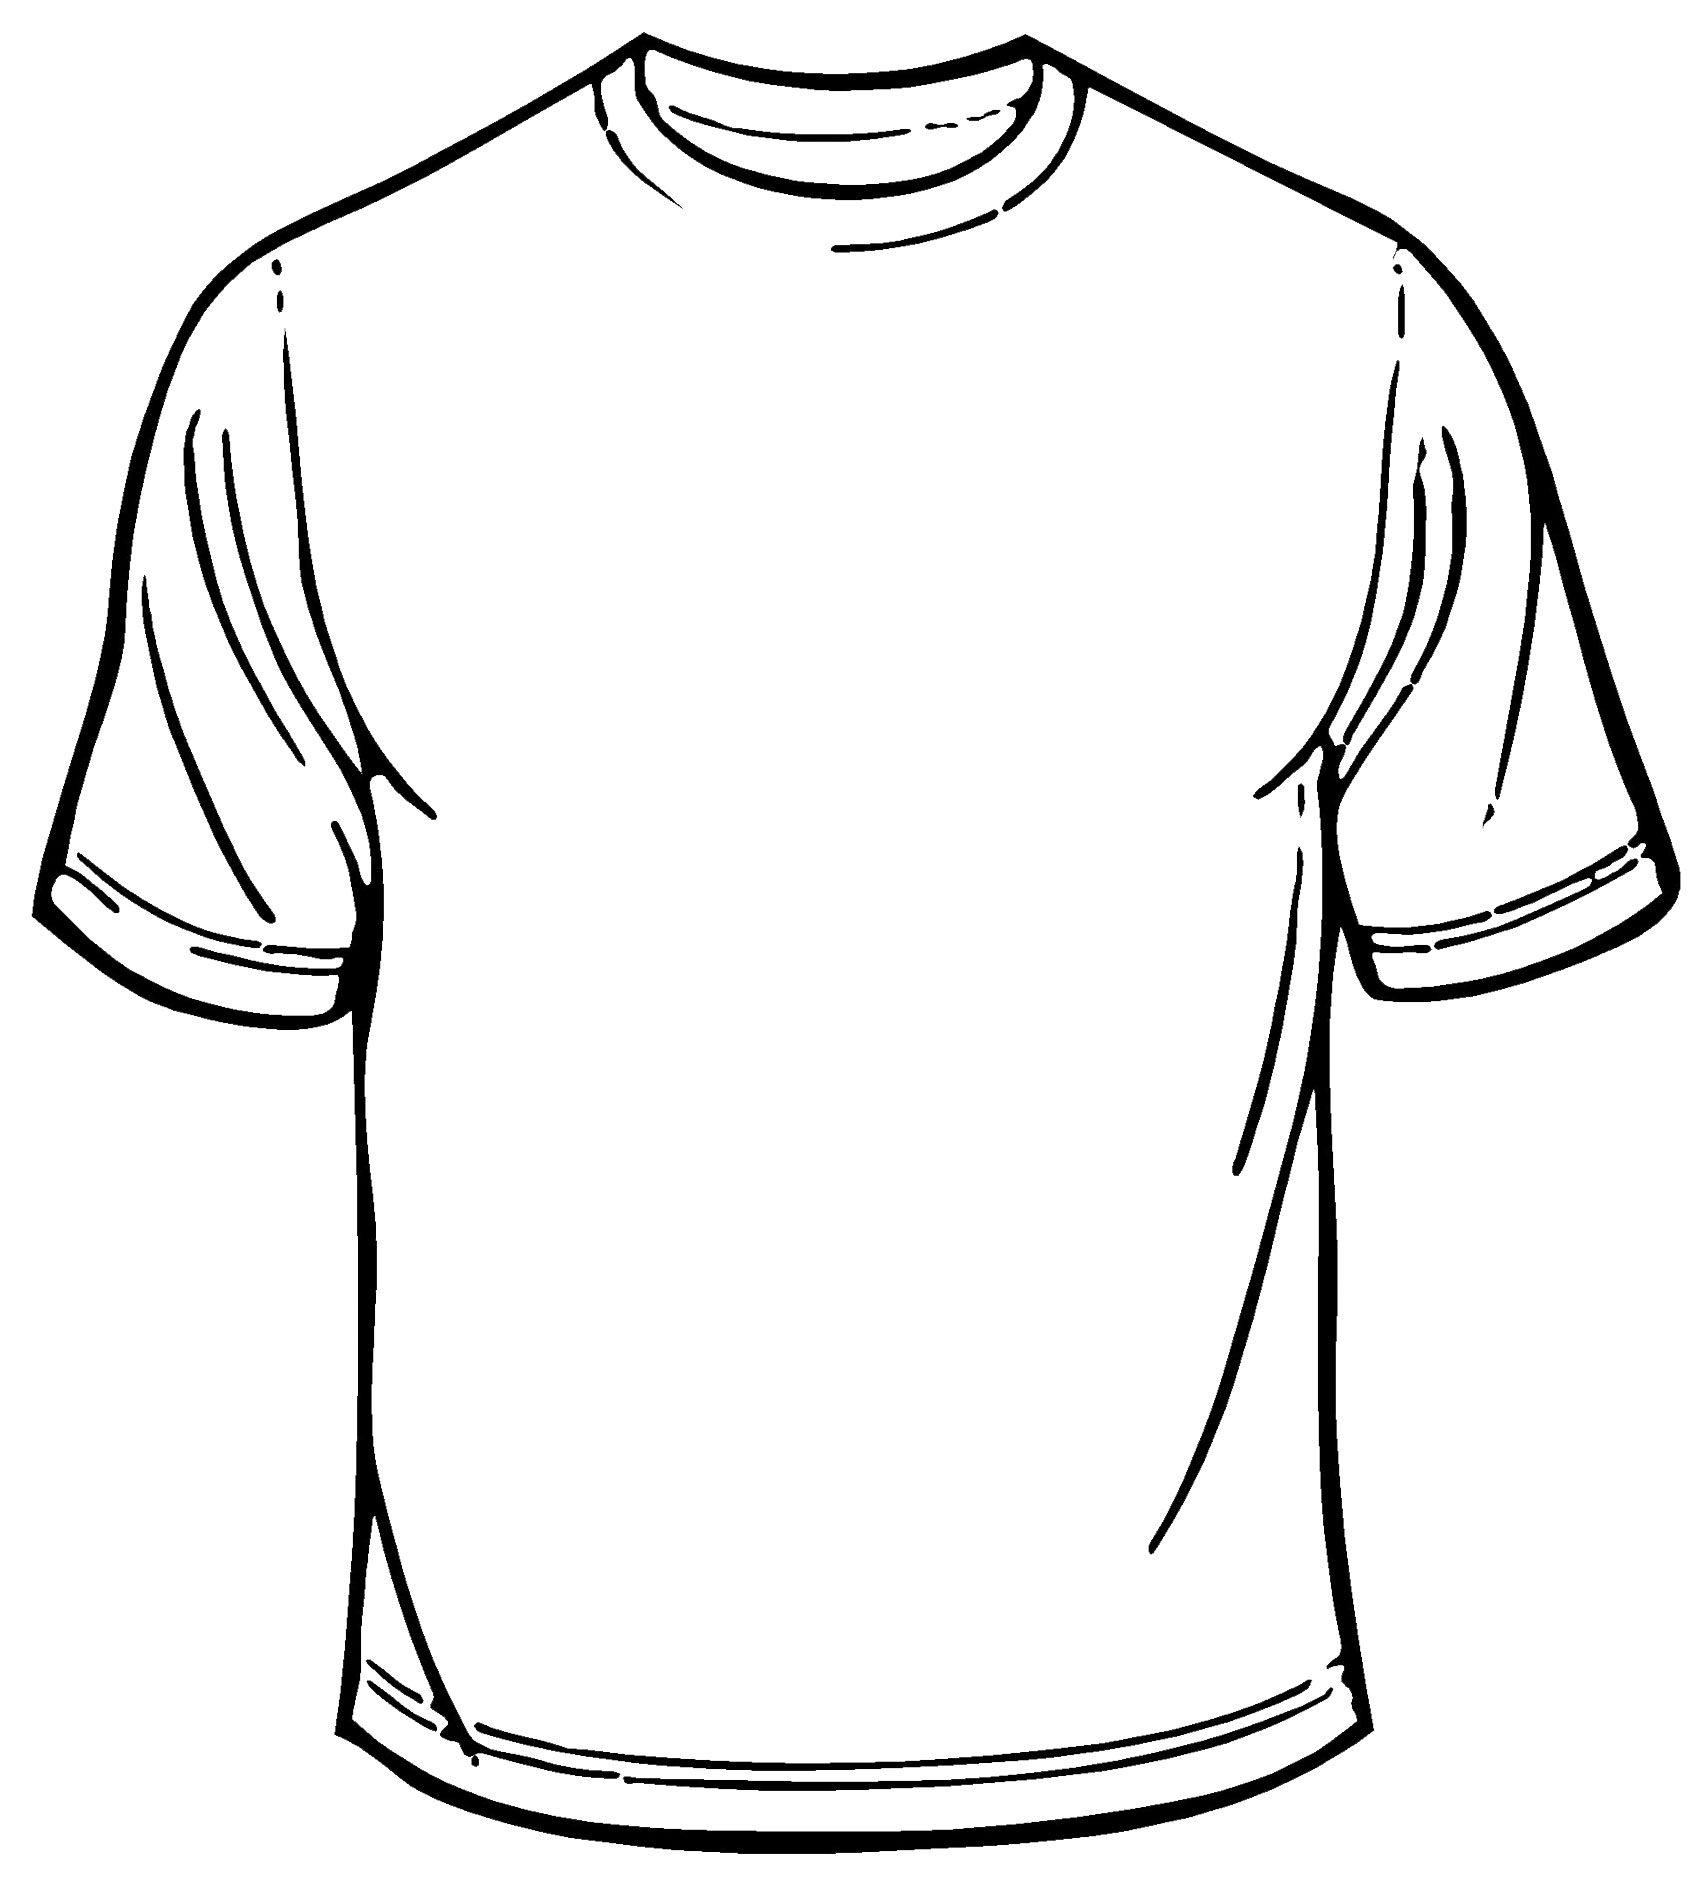 25 Blank Sweatshirt Template Images - Blank Hoodie Template, Blank In Blank T Shirt Outline Template